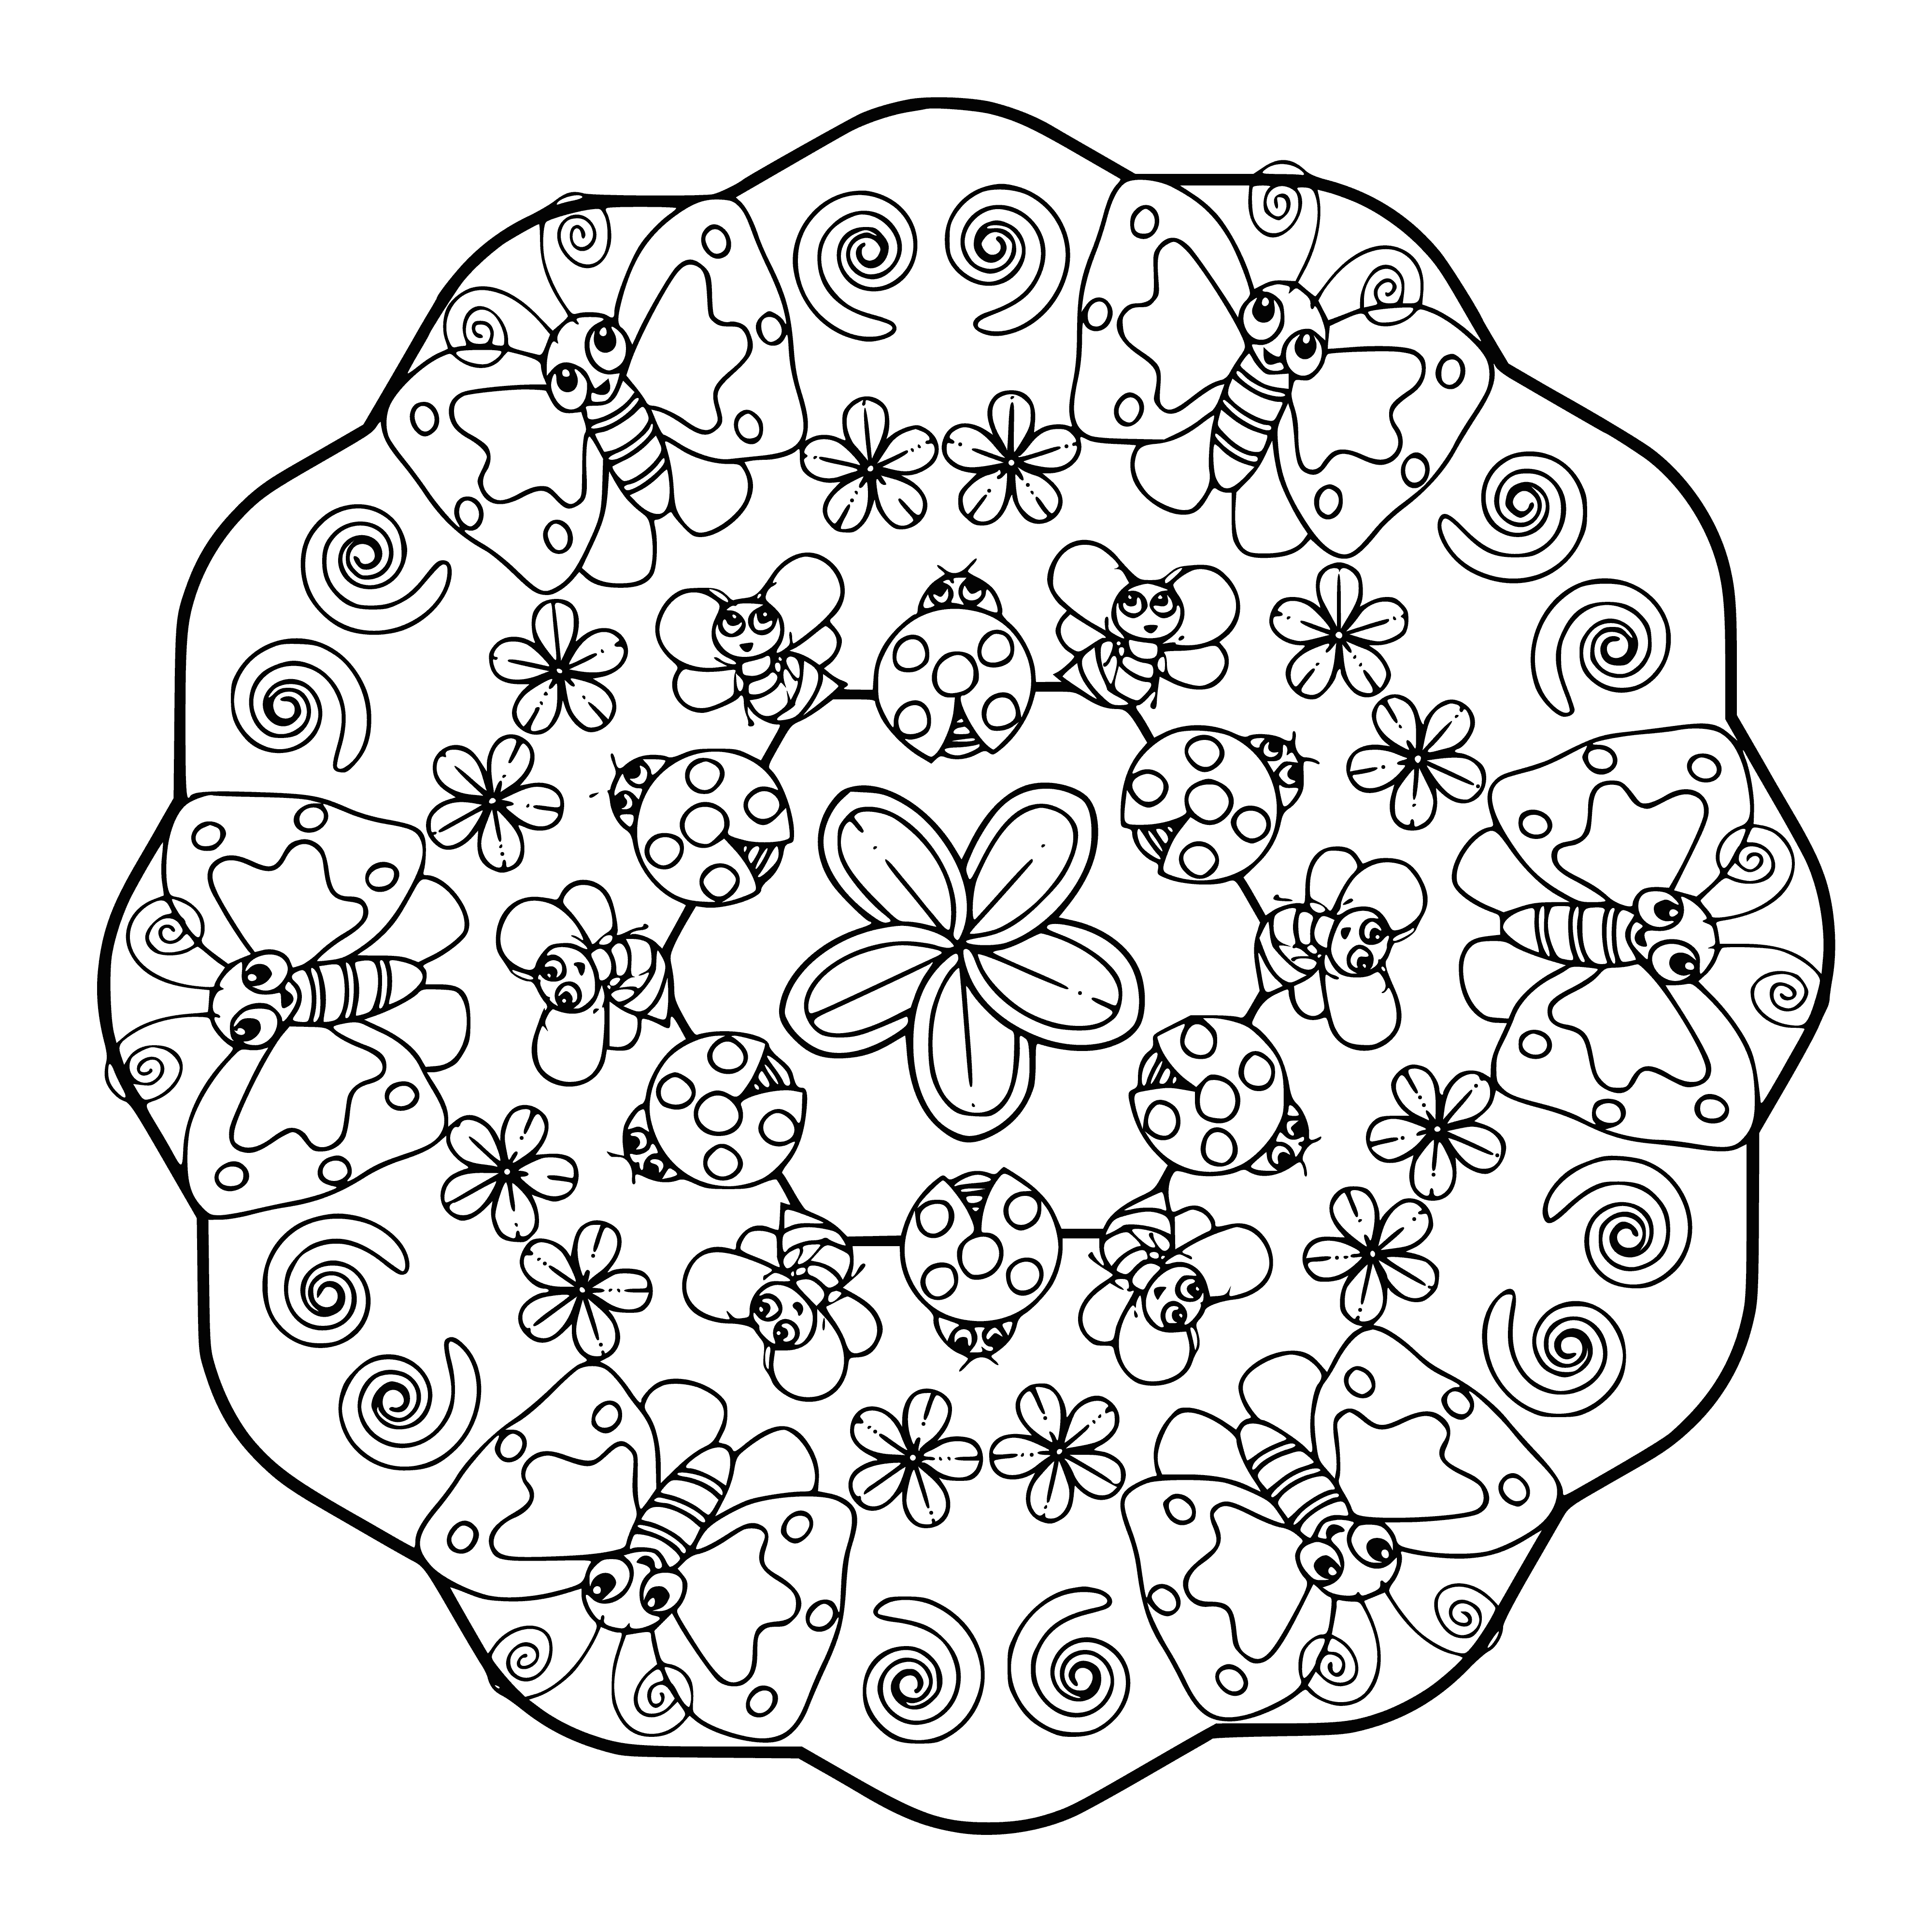 Mandala coloring page